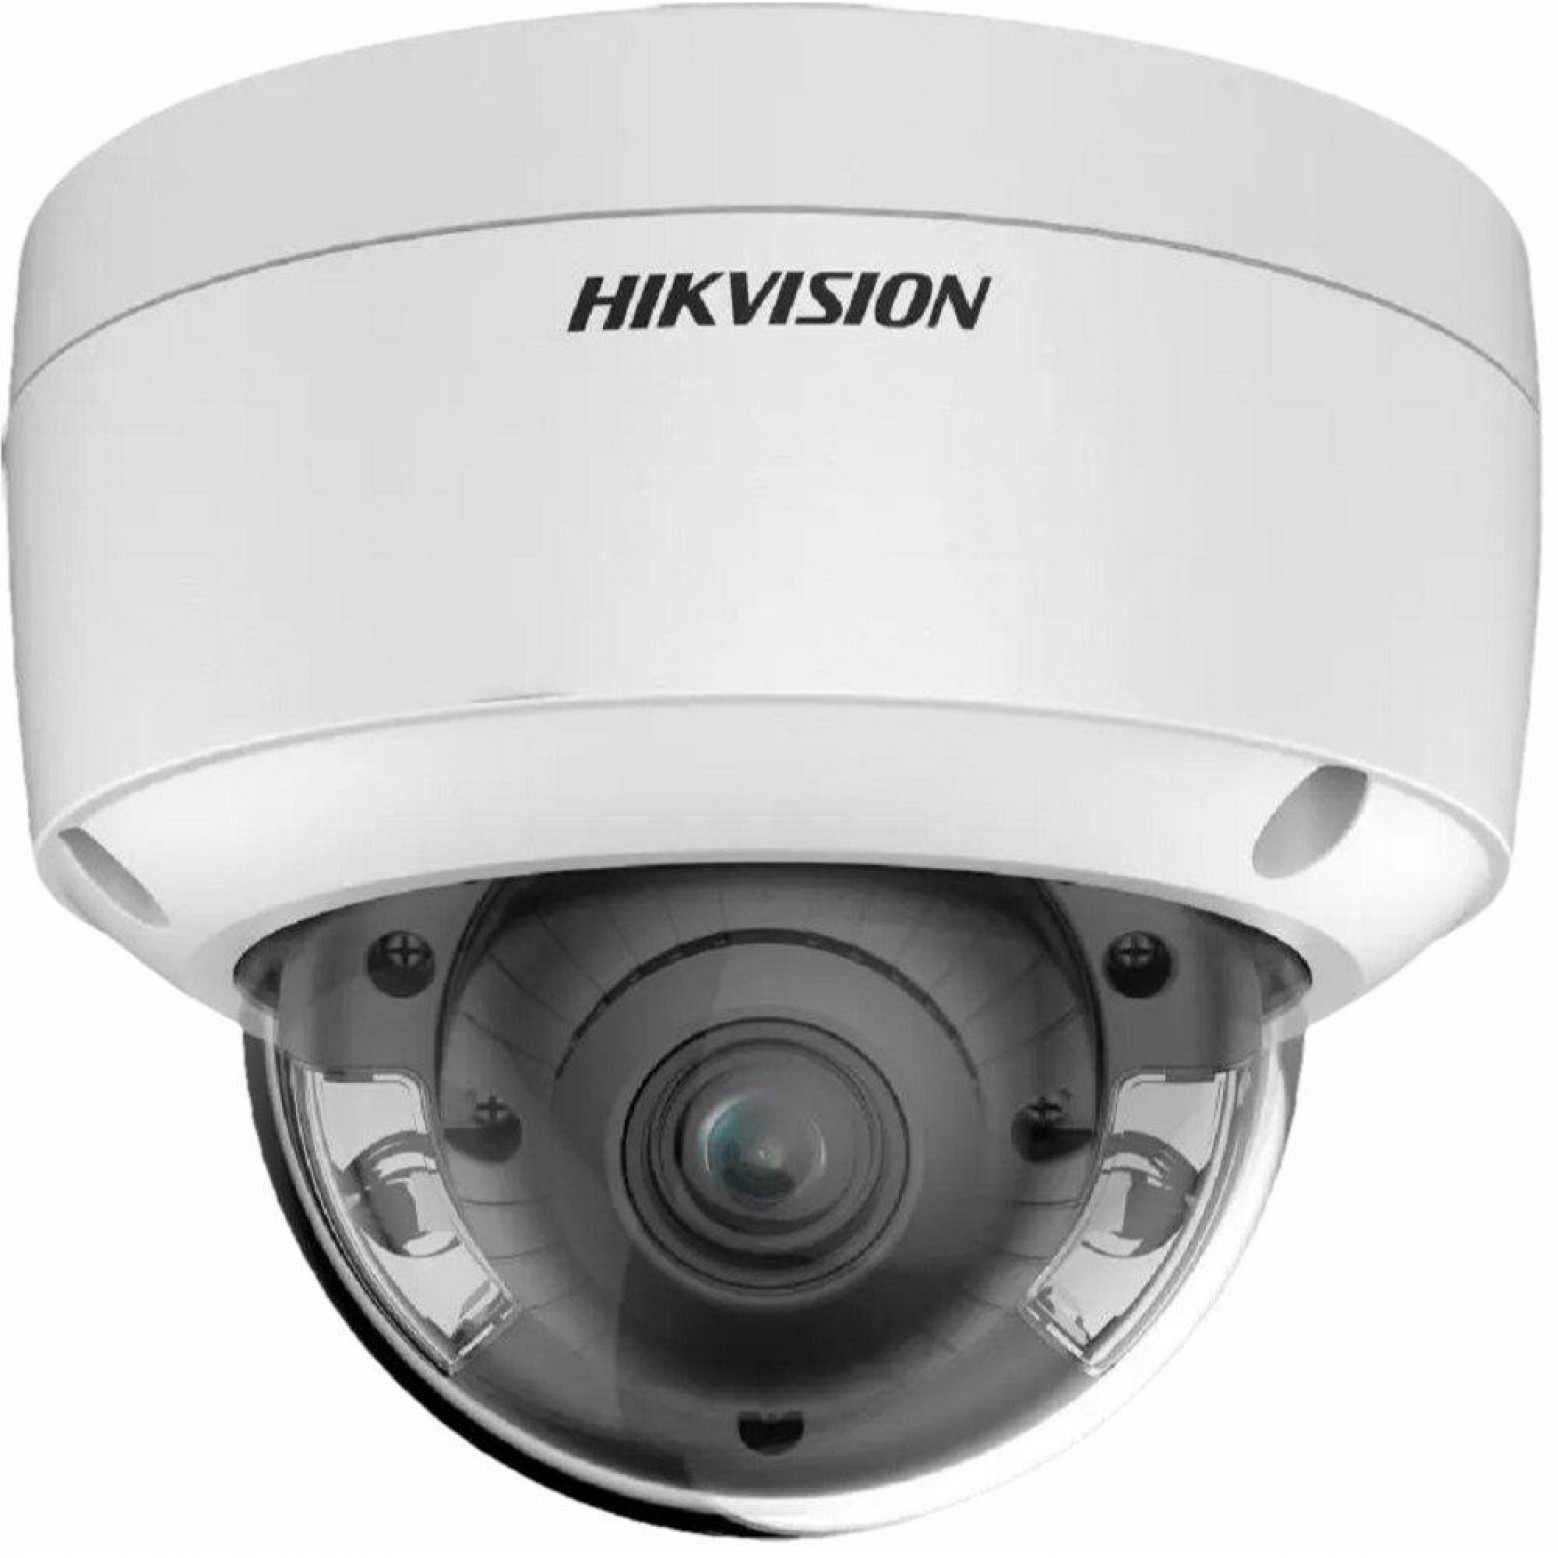 Hikvision - DS-2CD2747G2-LZS - ColorVu Hybrid - obiektyw zmiennoogniskowy - (2,8 - 12 mm) - kamera kopułkowa - 4 MP - IP - Wit